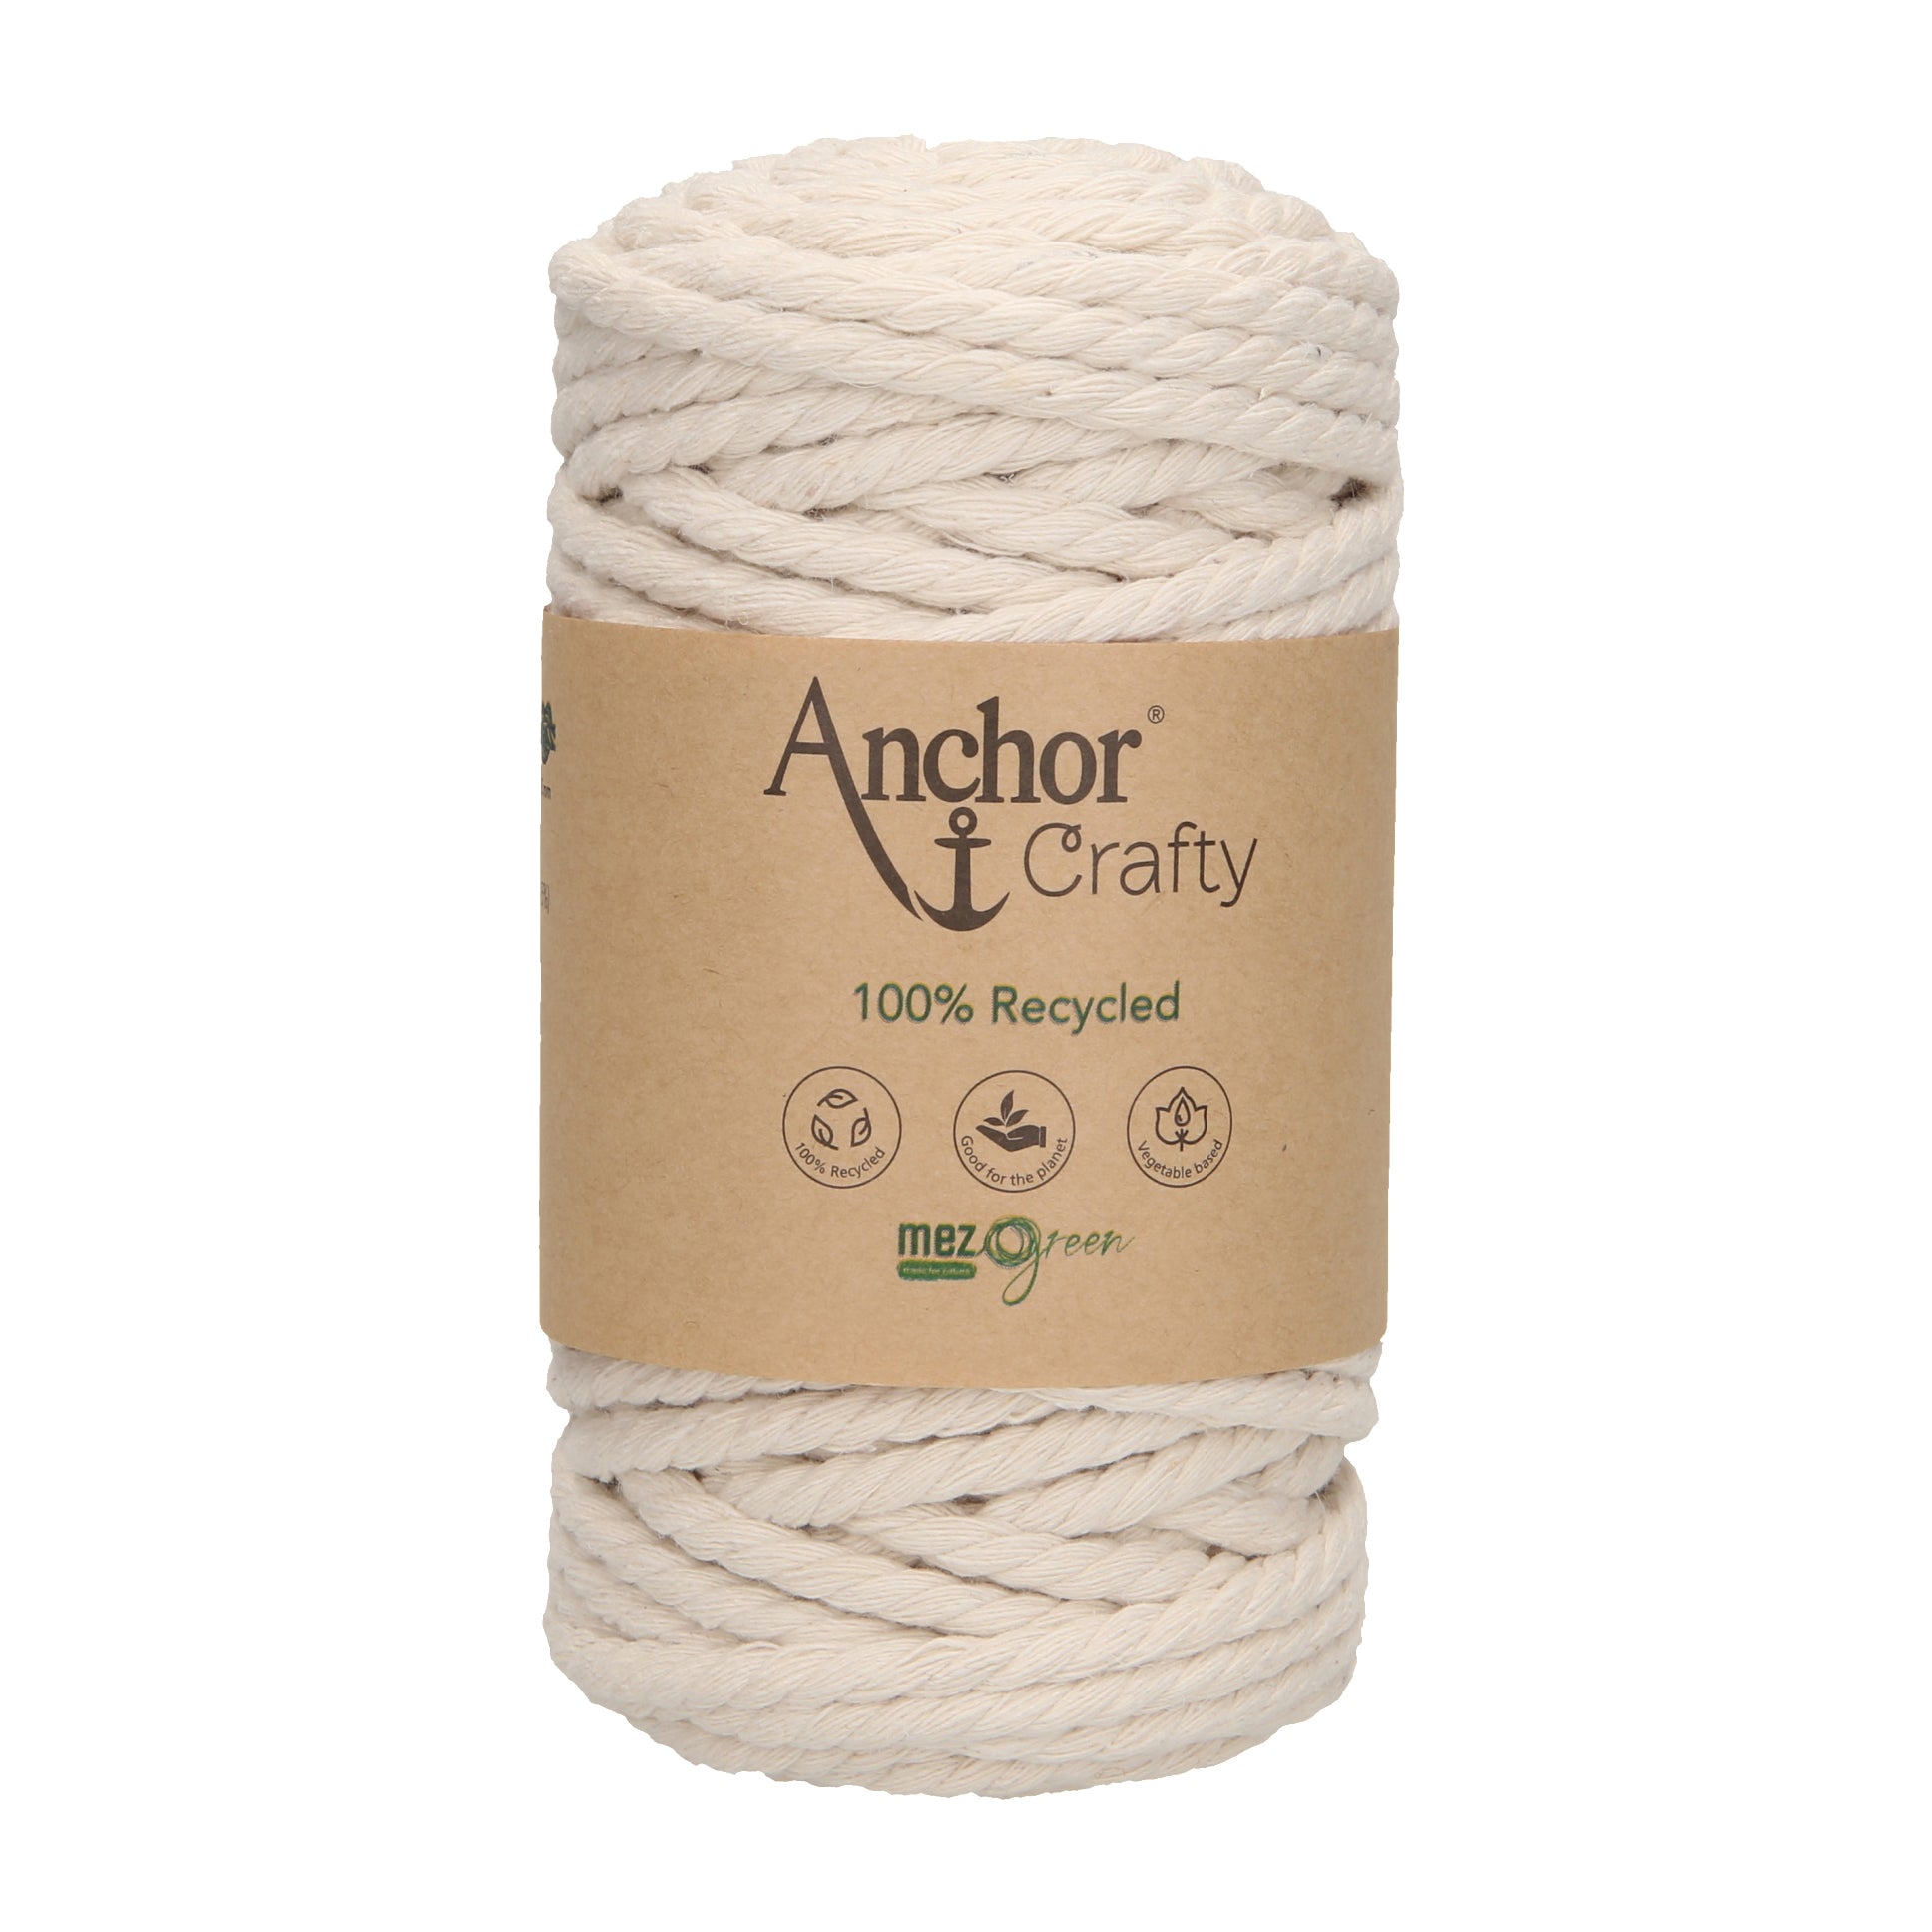 Anchor Crafty: 5mm Cord – Fully Woolly Yarns